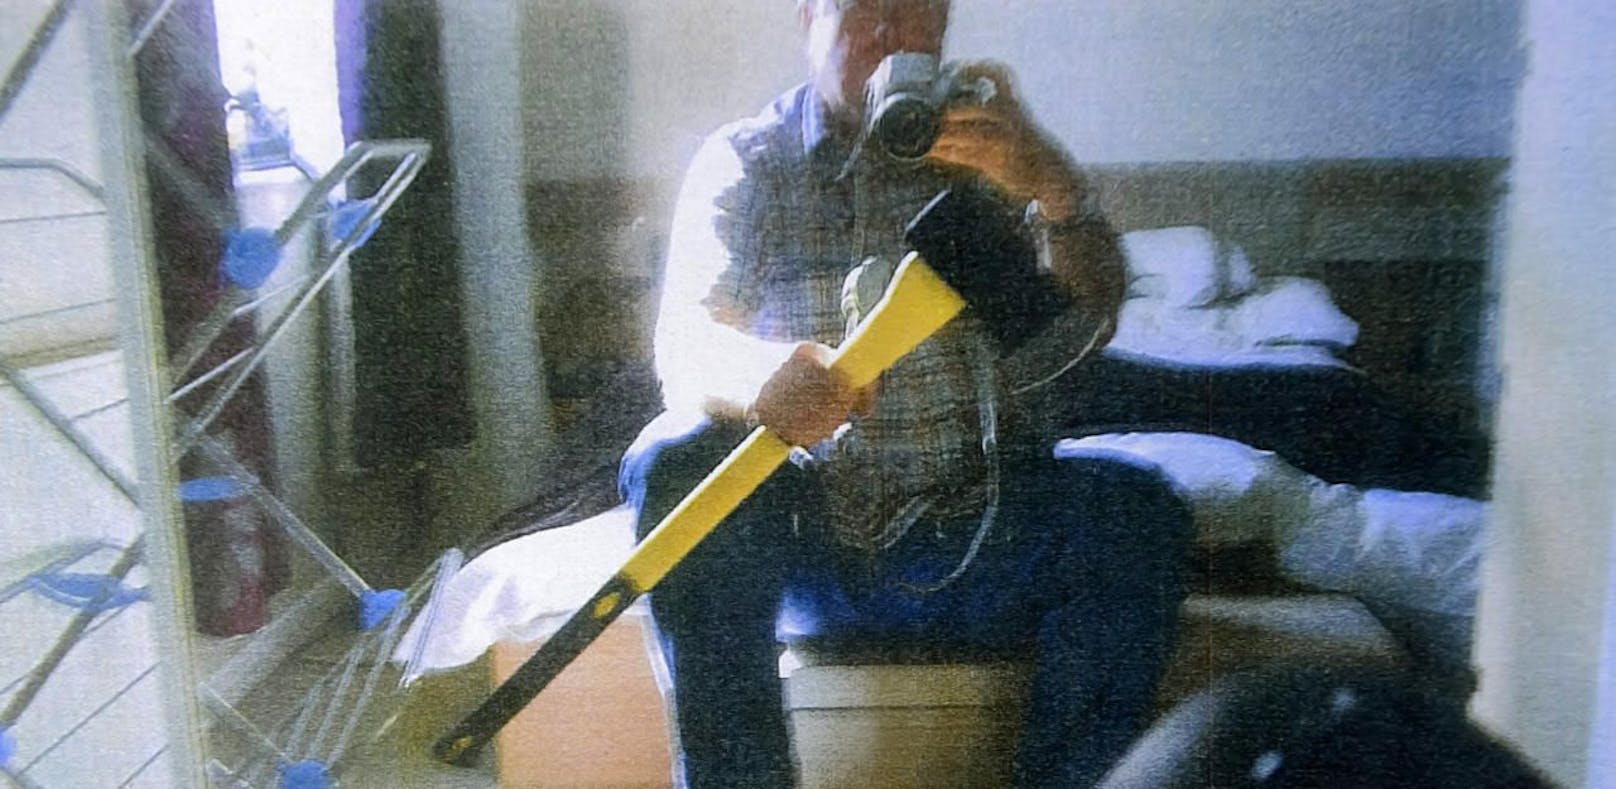 Dale B. posiert auf einem Selfie mit einer Axt. Das Bild wurde 2014 im Zuge des Prozesses veröffentlicht.